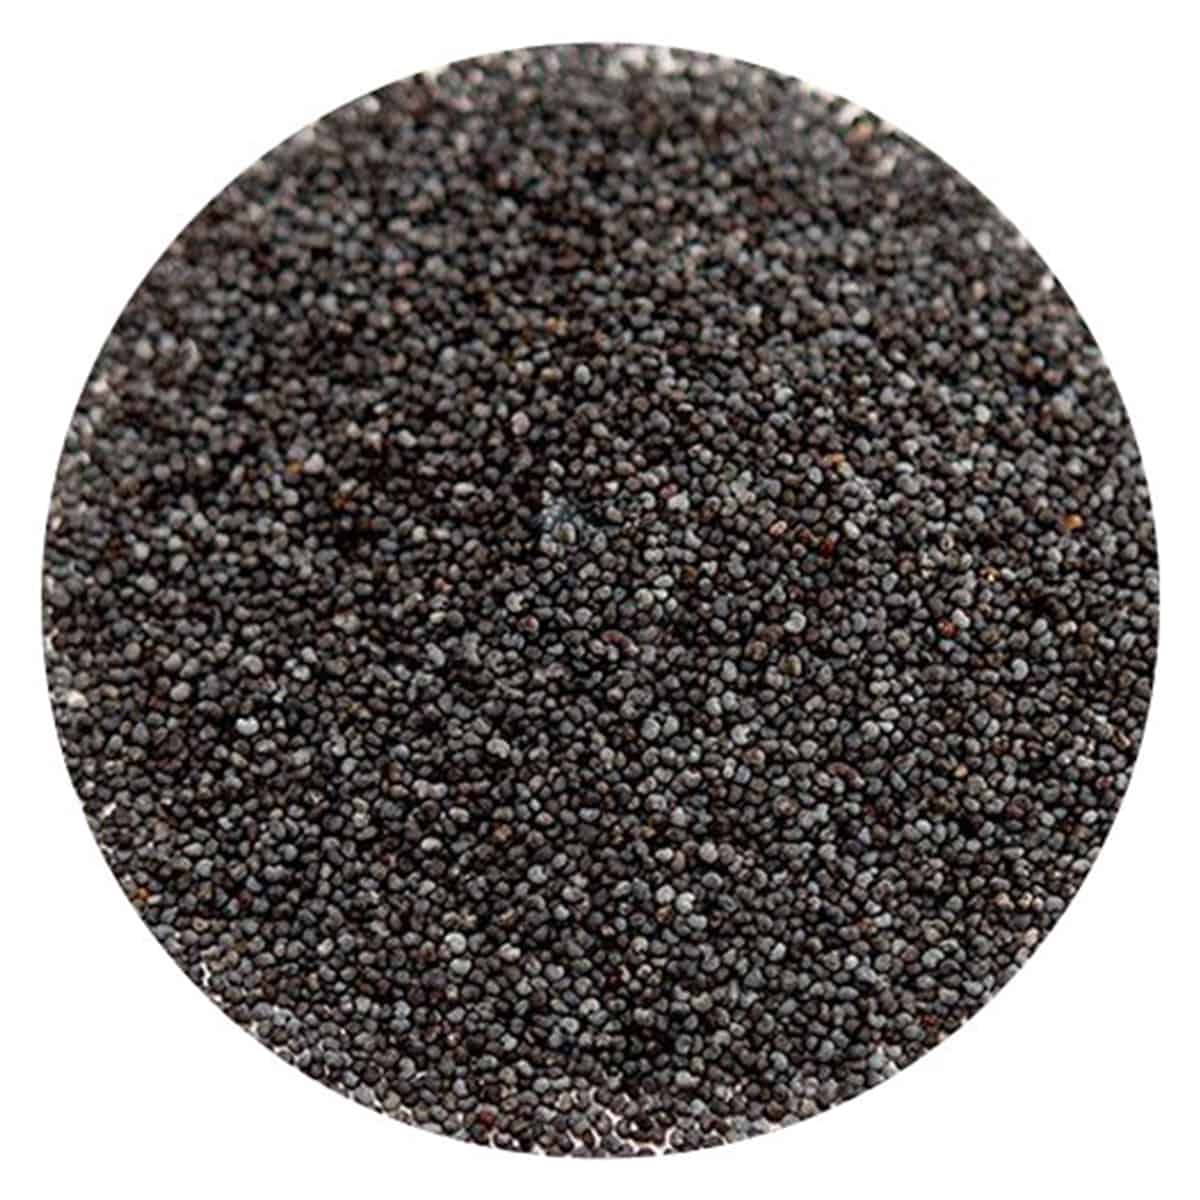 Buy IAG Foods Black Poppy Seeds - 200 gm